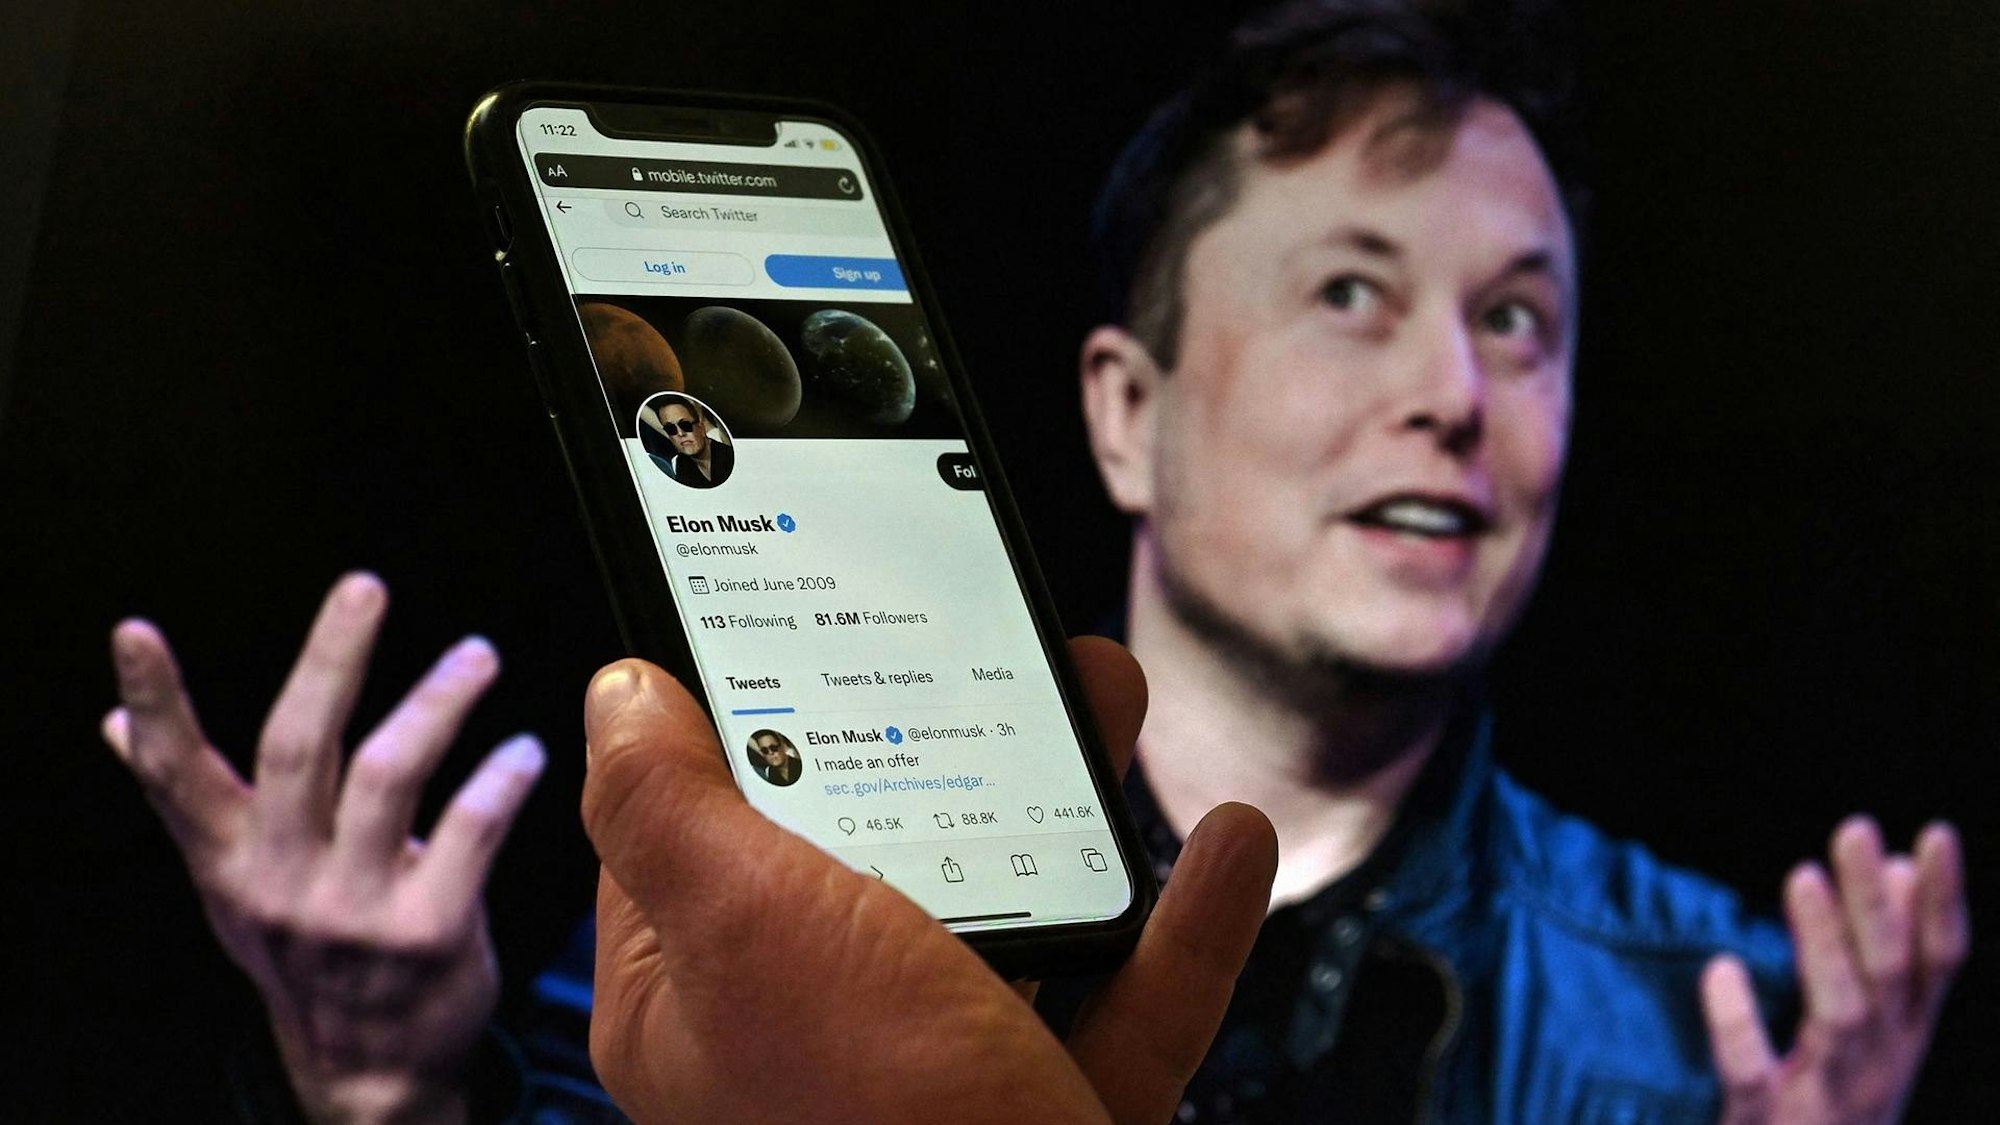 Elon Musk mit erhobenen Händen beim Reden hinter einem Handy, dass sein Twitter-Profil zeigt.